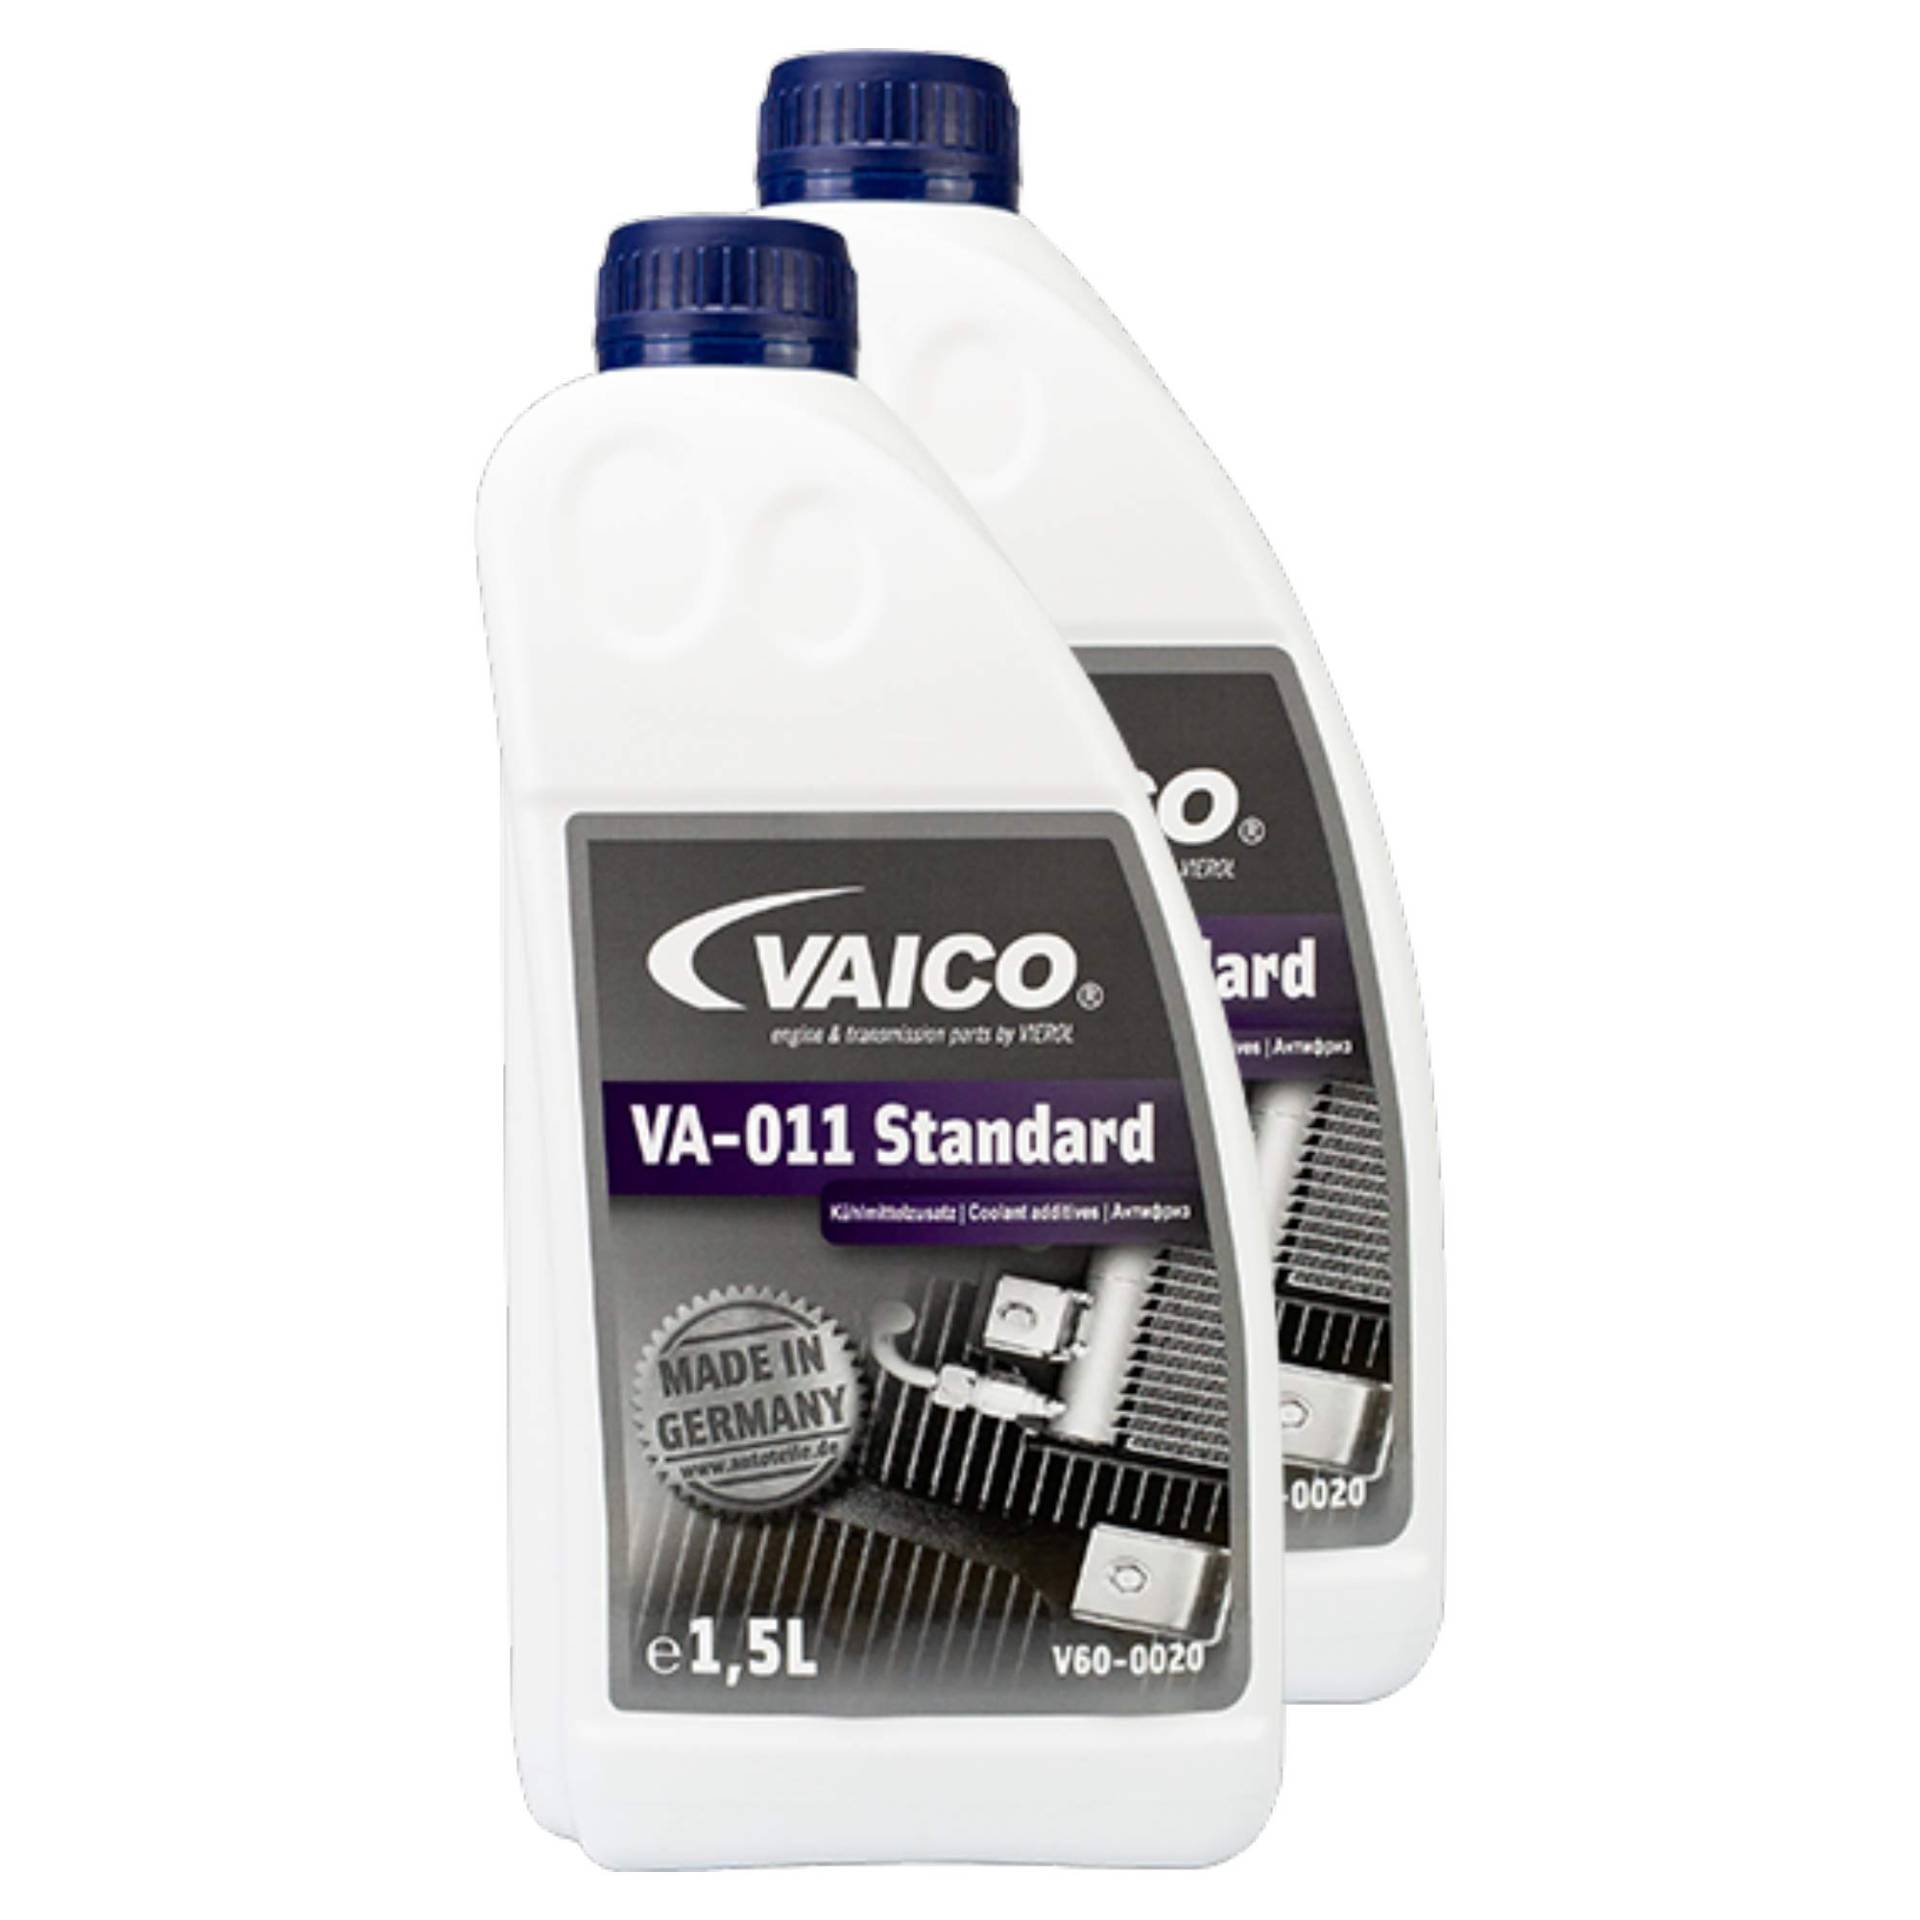 VAICO 2X Frostschutz Va-011 Standard Blau 5L Erstausrüsterqualität V60-0020 von VAICO